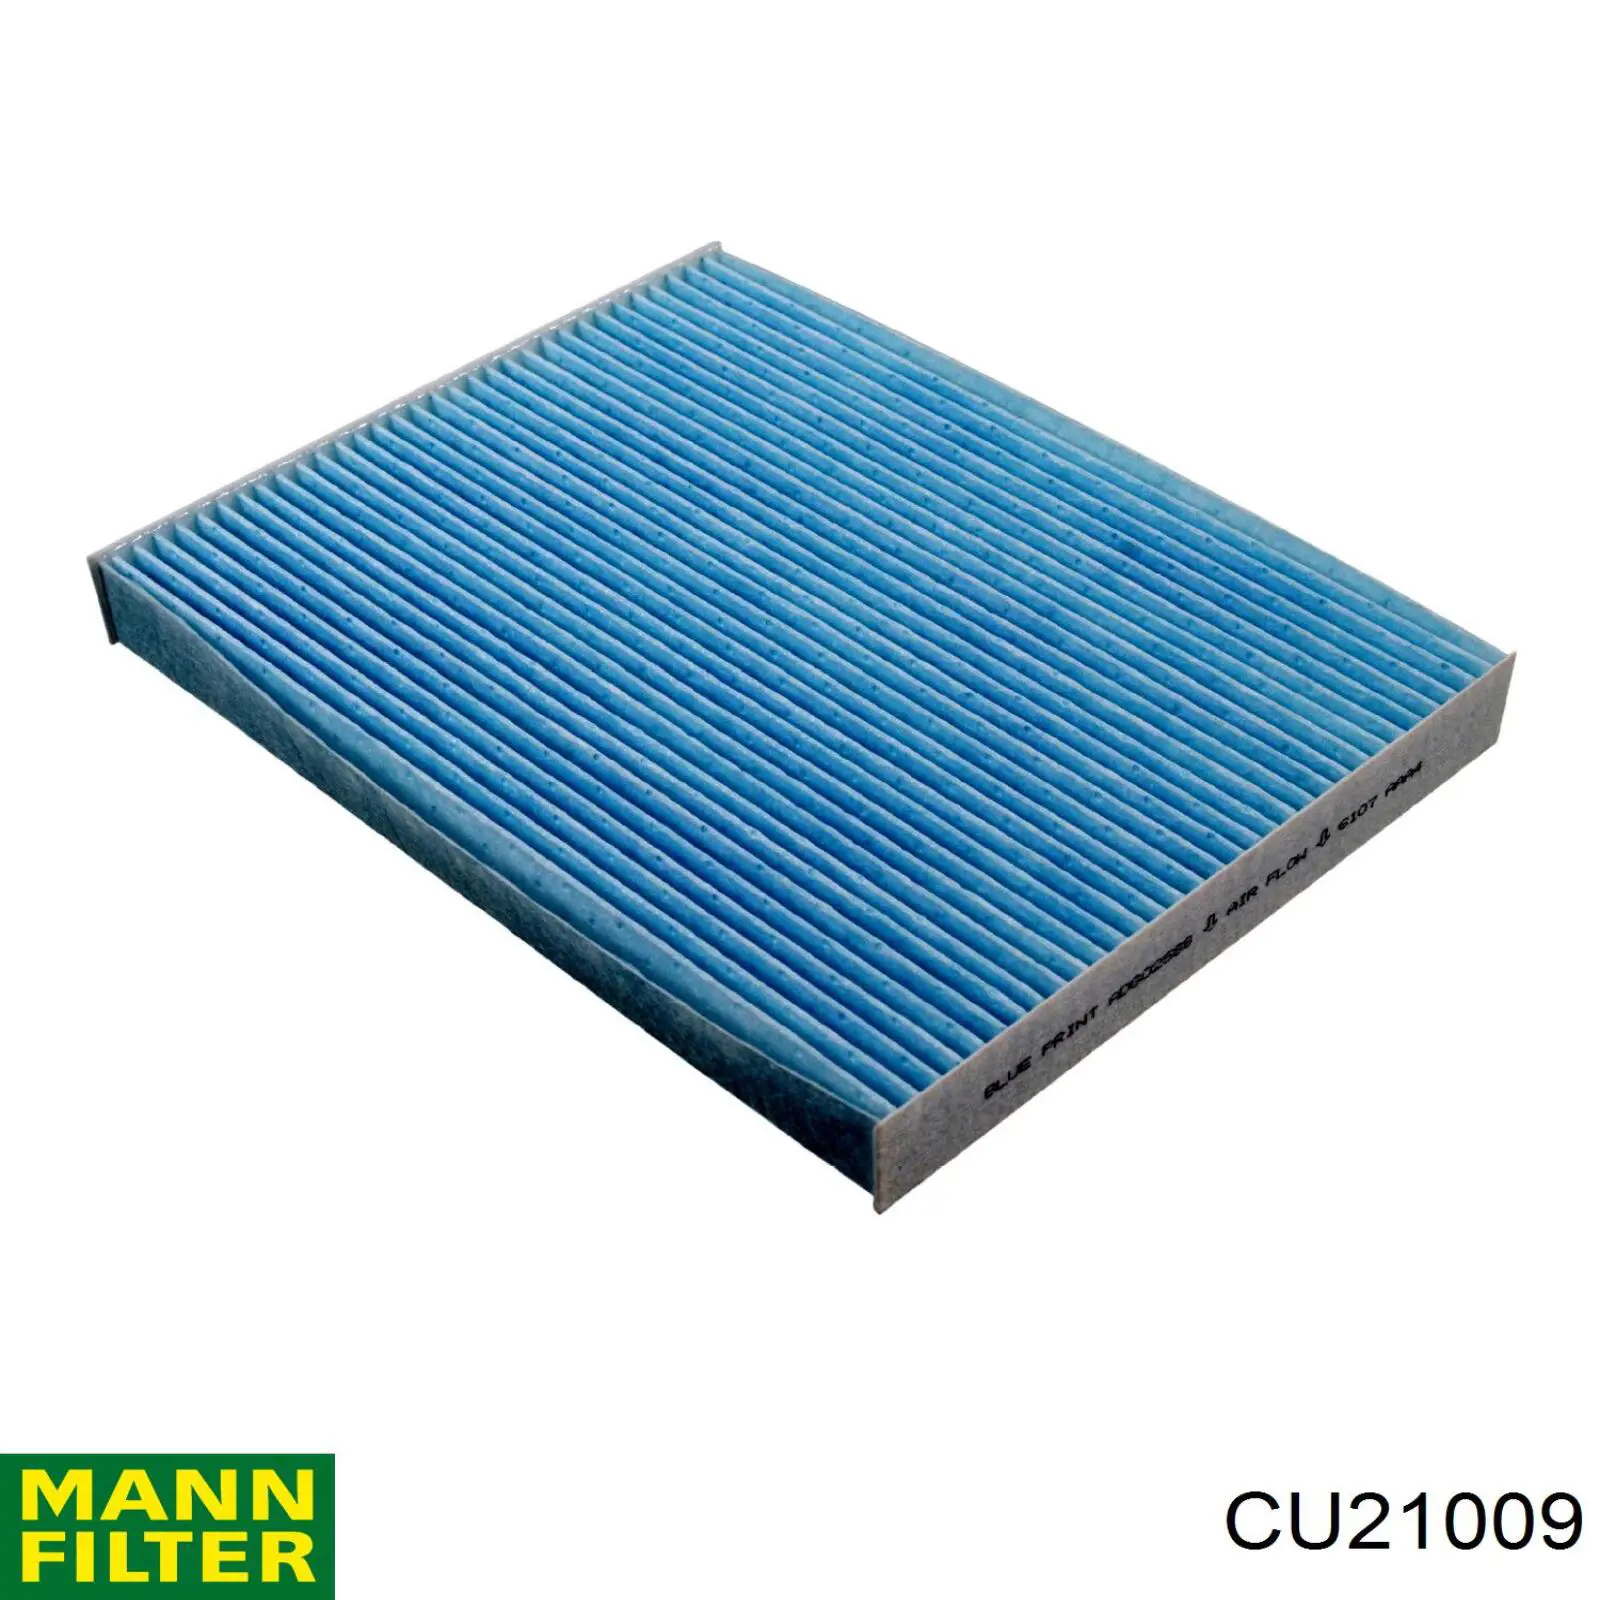 Filtro de habitáculo CU21009 Mann-Filter